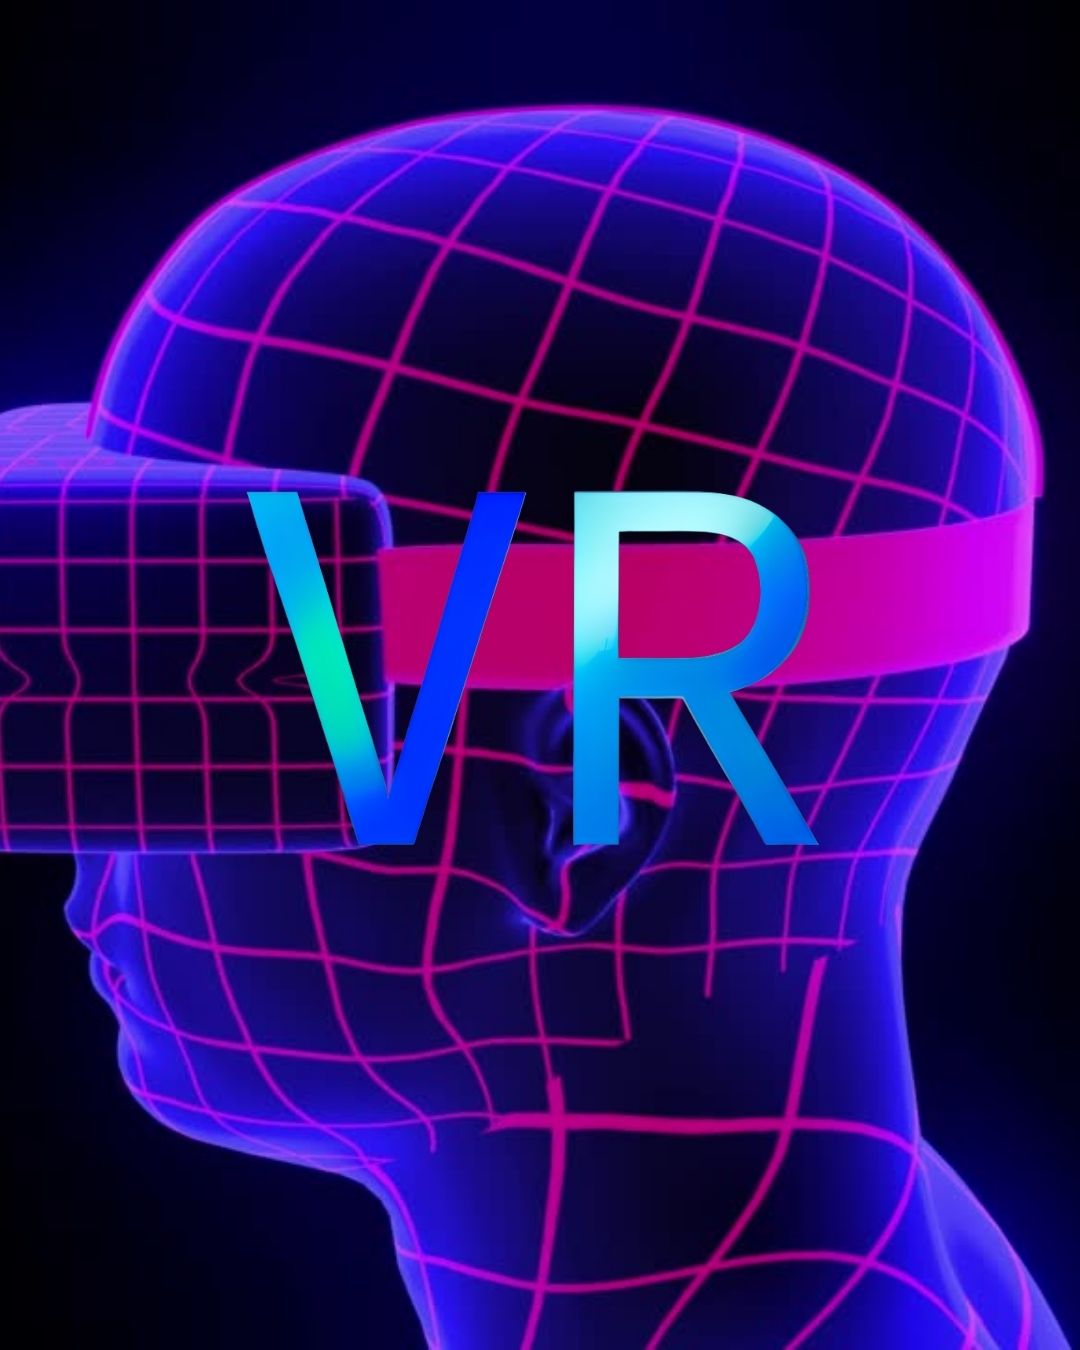 ¿Qué es la Realidad Virtual (VR)? ¿Qué ventajas y beneficios ofrece en la educación? ¿Cuáles son sus desventajas y desafíos?